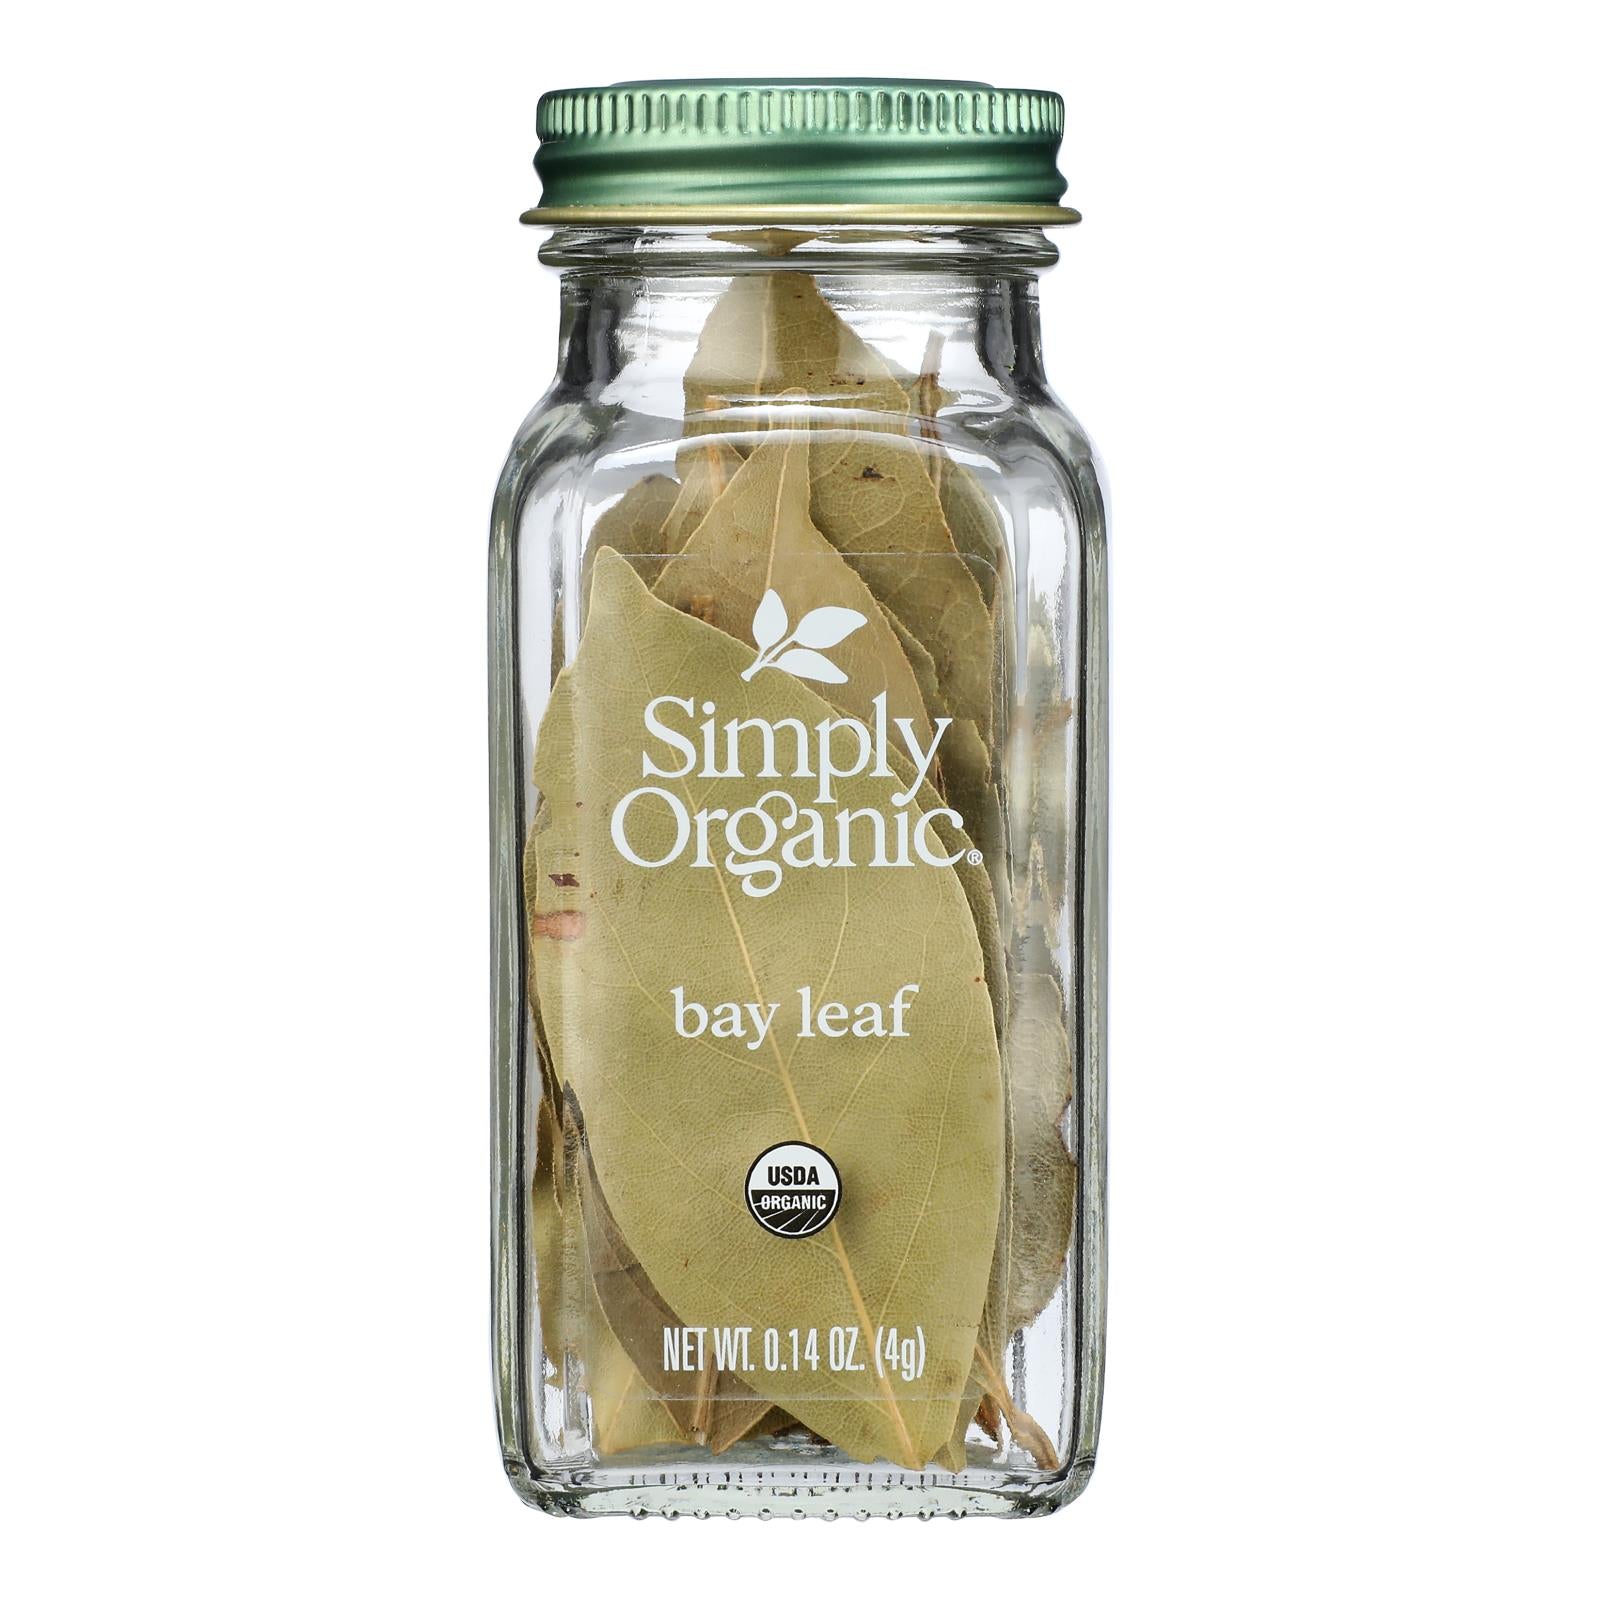 Simply Organic - Bay Leaf Organic - Case of 6 - 0.14 Ounces